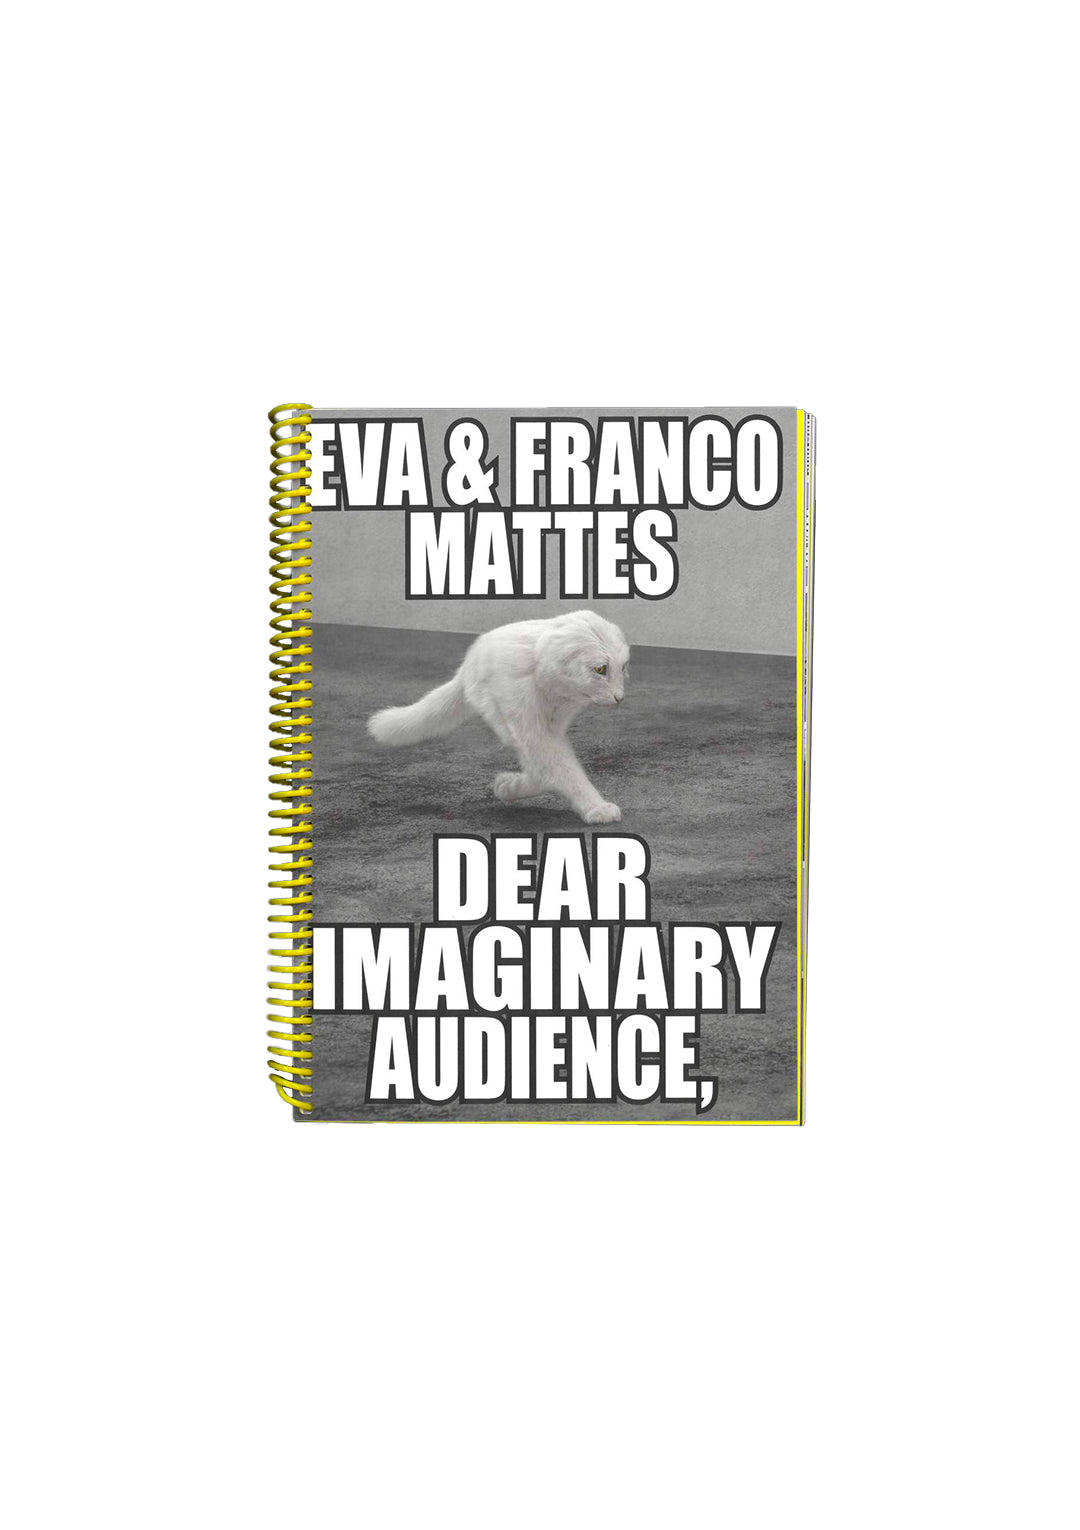 Dear Imaginary Audience